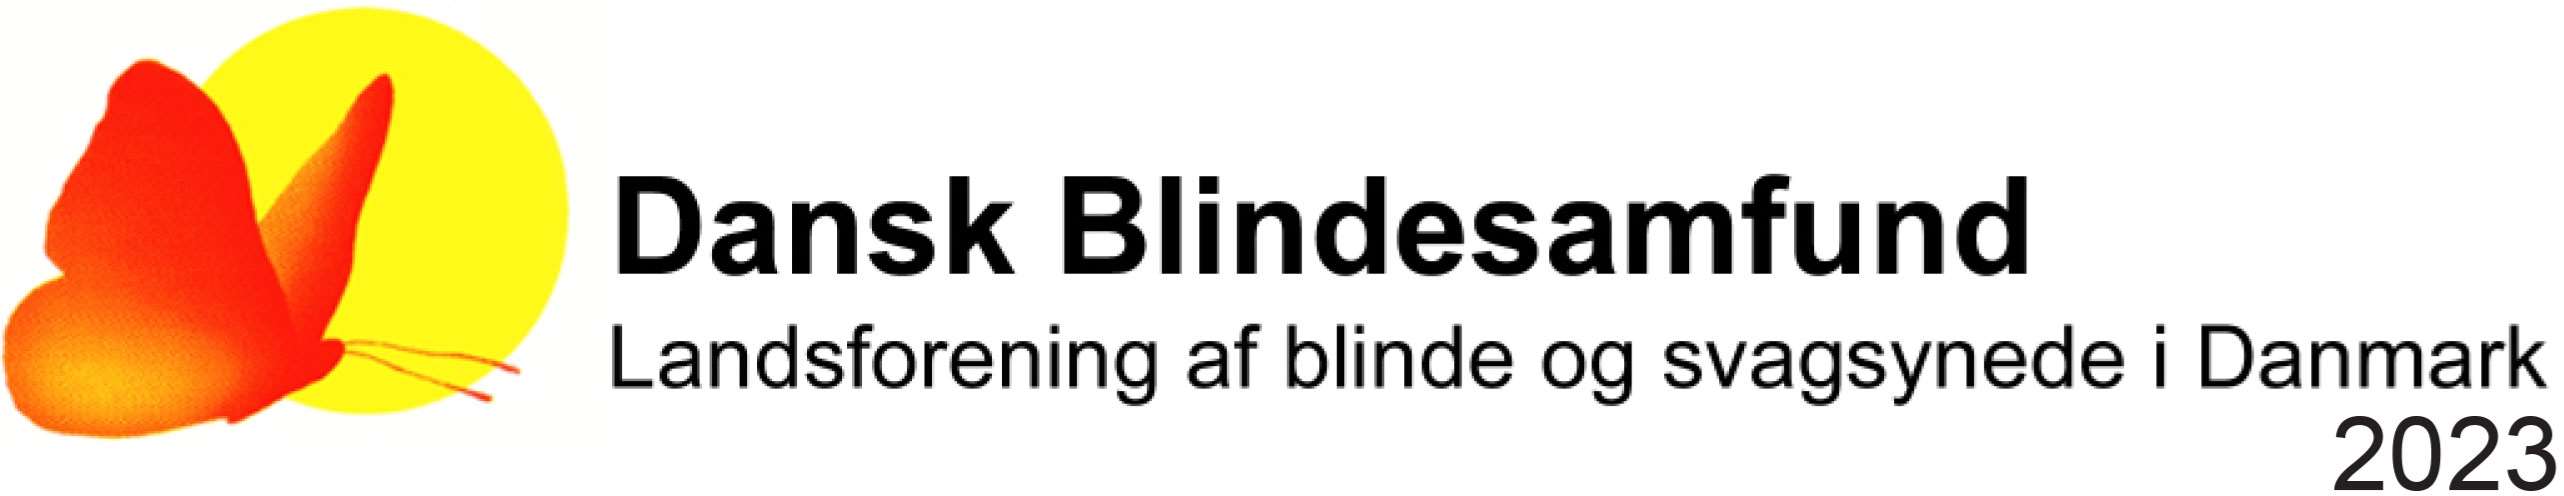 dansk-blindesamfund-2023